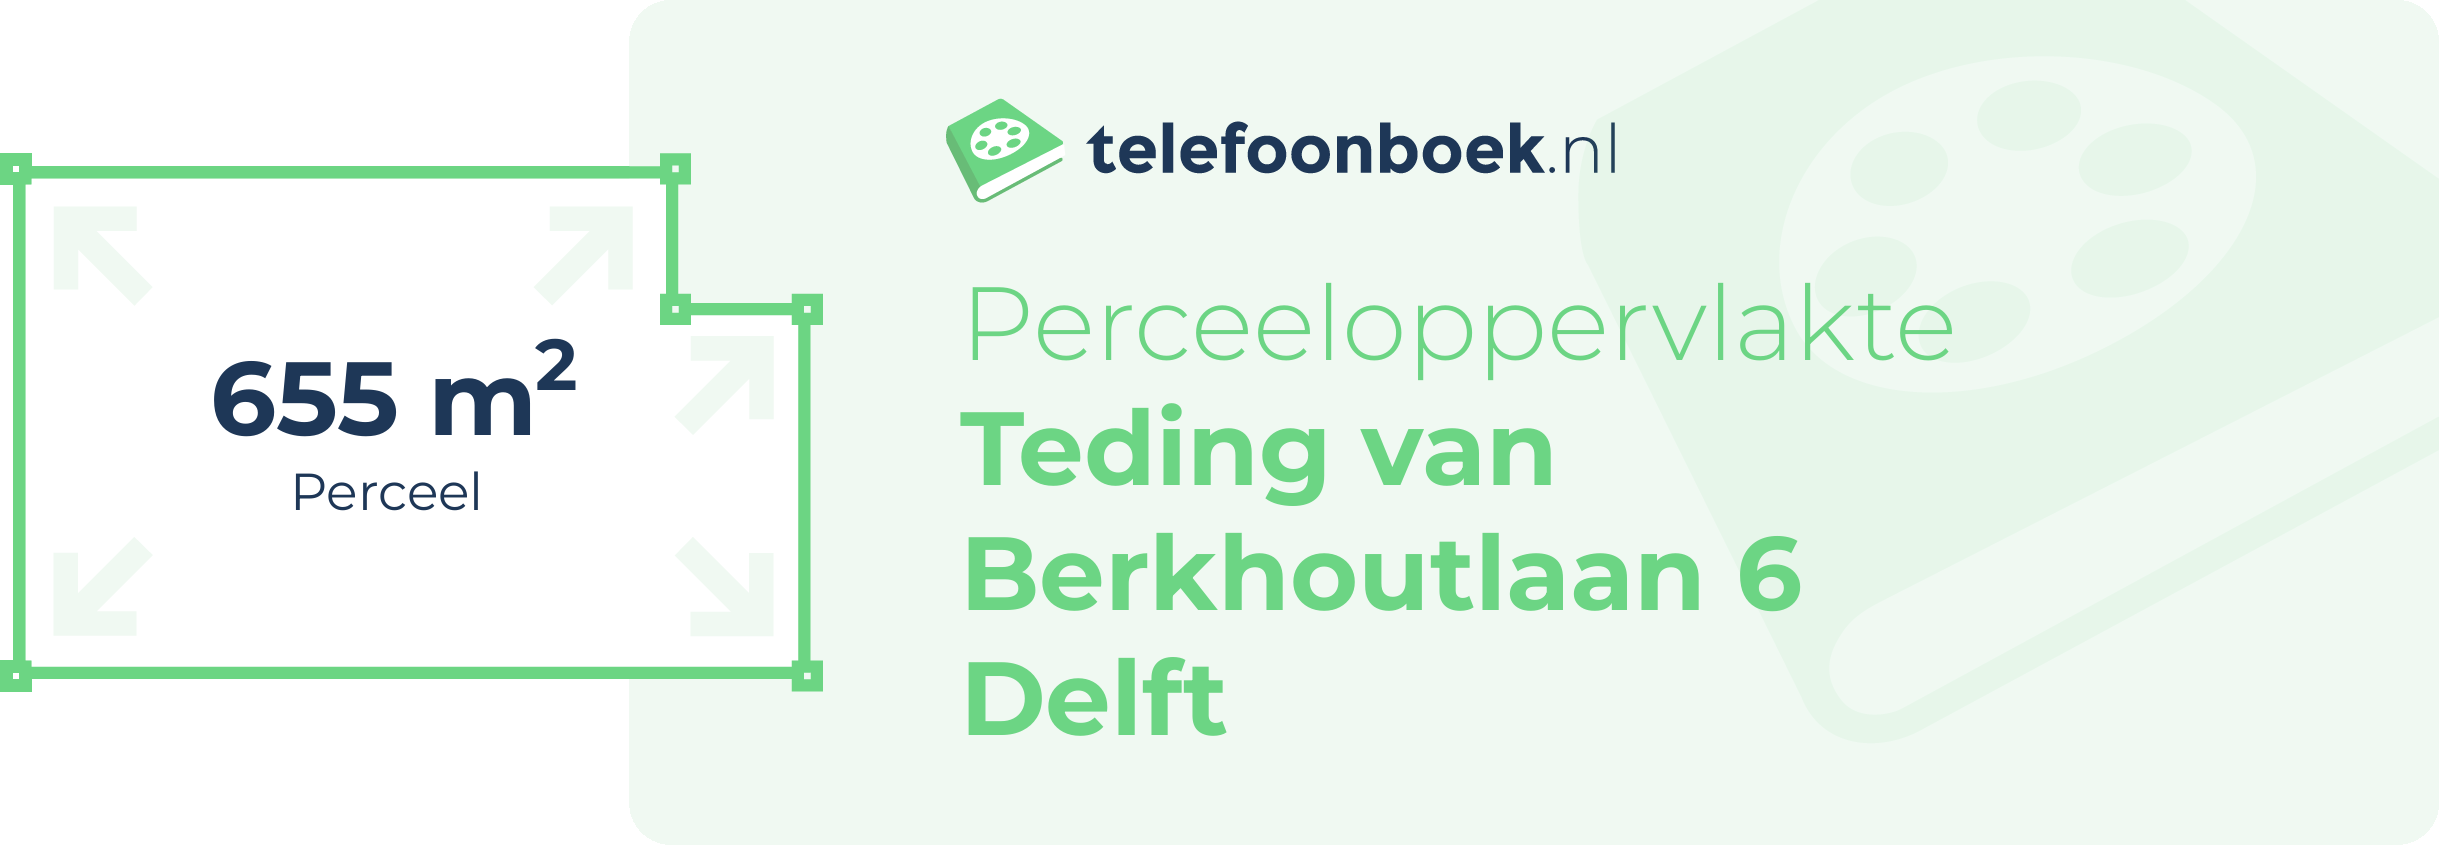 Perceeloppervlakte Teding Van Berkhoutlaan 6 Delft